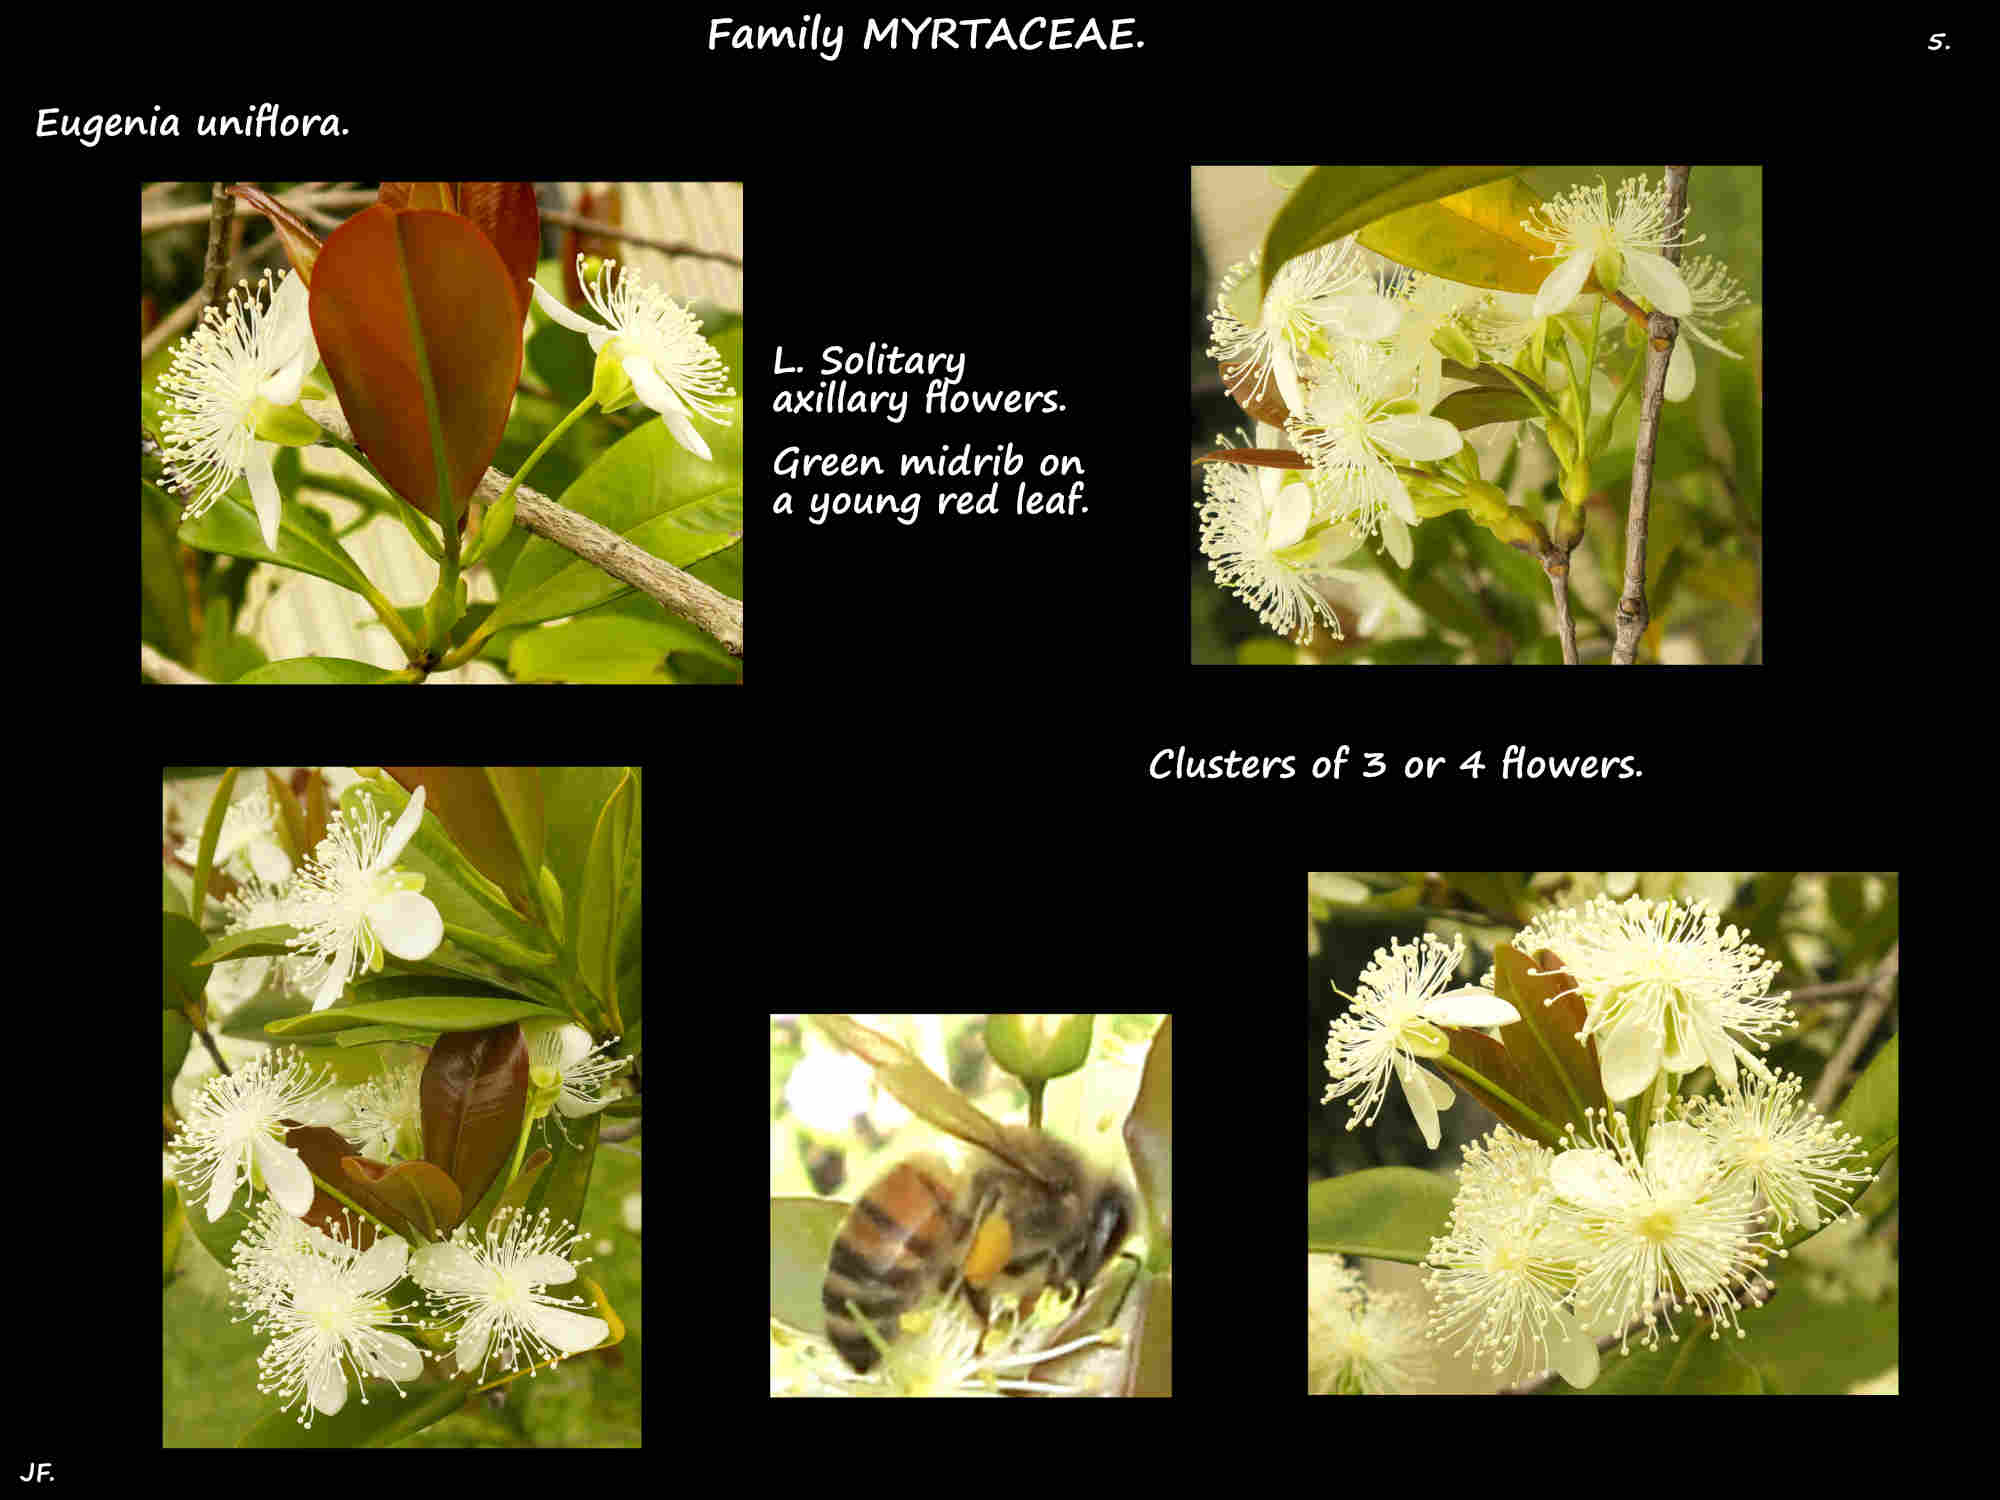 5 Eugenia uniflora inflorescences